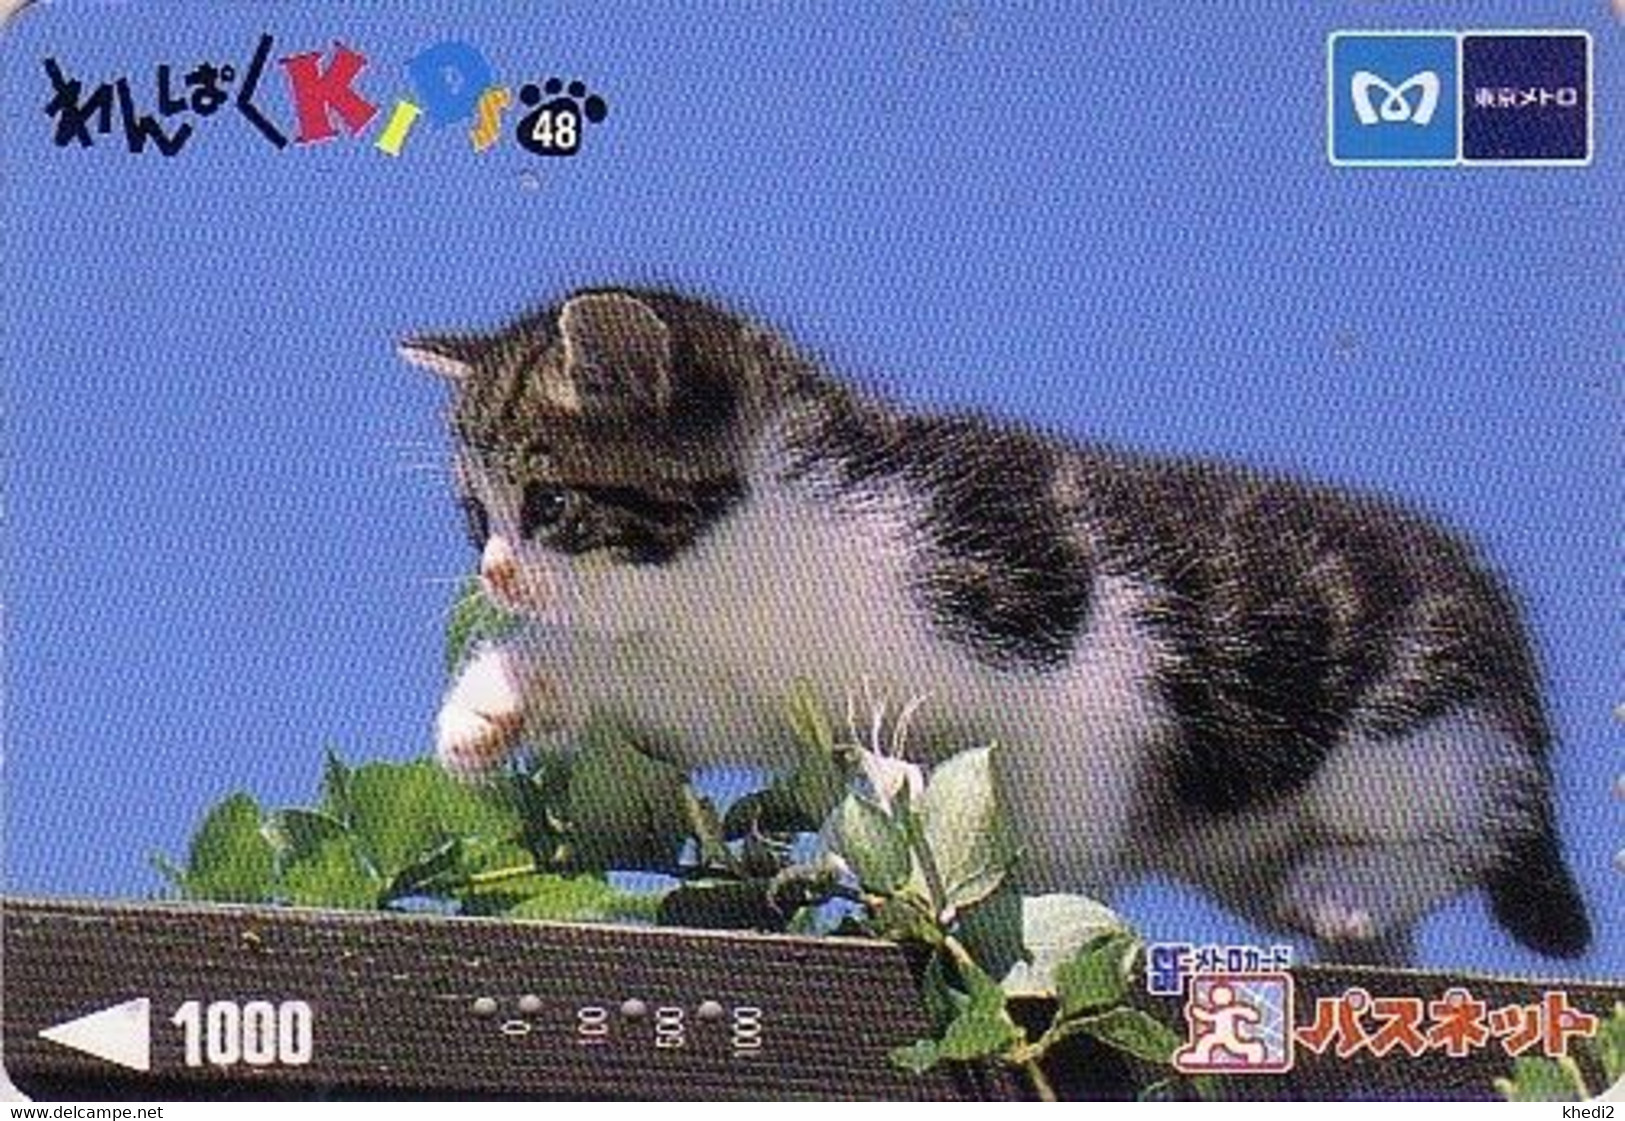 Carte Prépayée JAPON / Série KIDS 2 - ANIMAL - CHAT 48/51 - CAT JAPAN Prepaid Metro Ticket Card - KATZE Karte - Cats